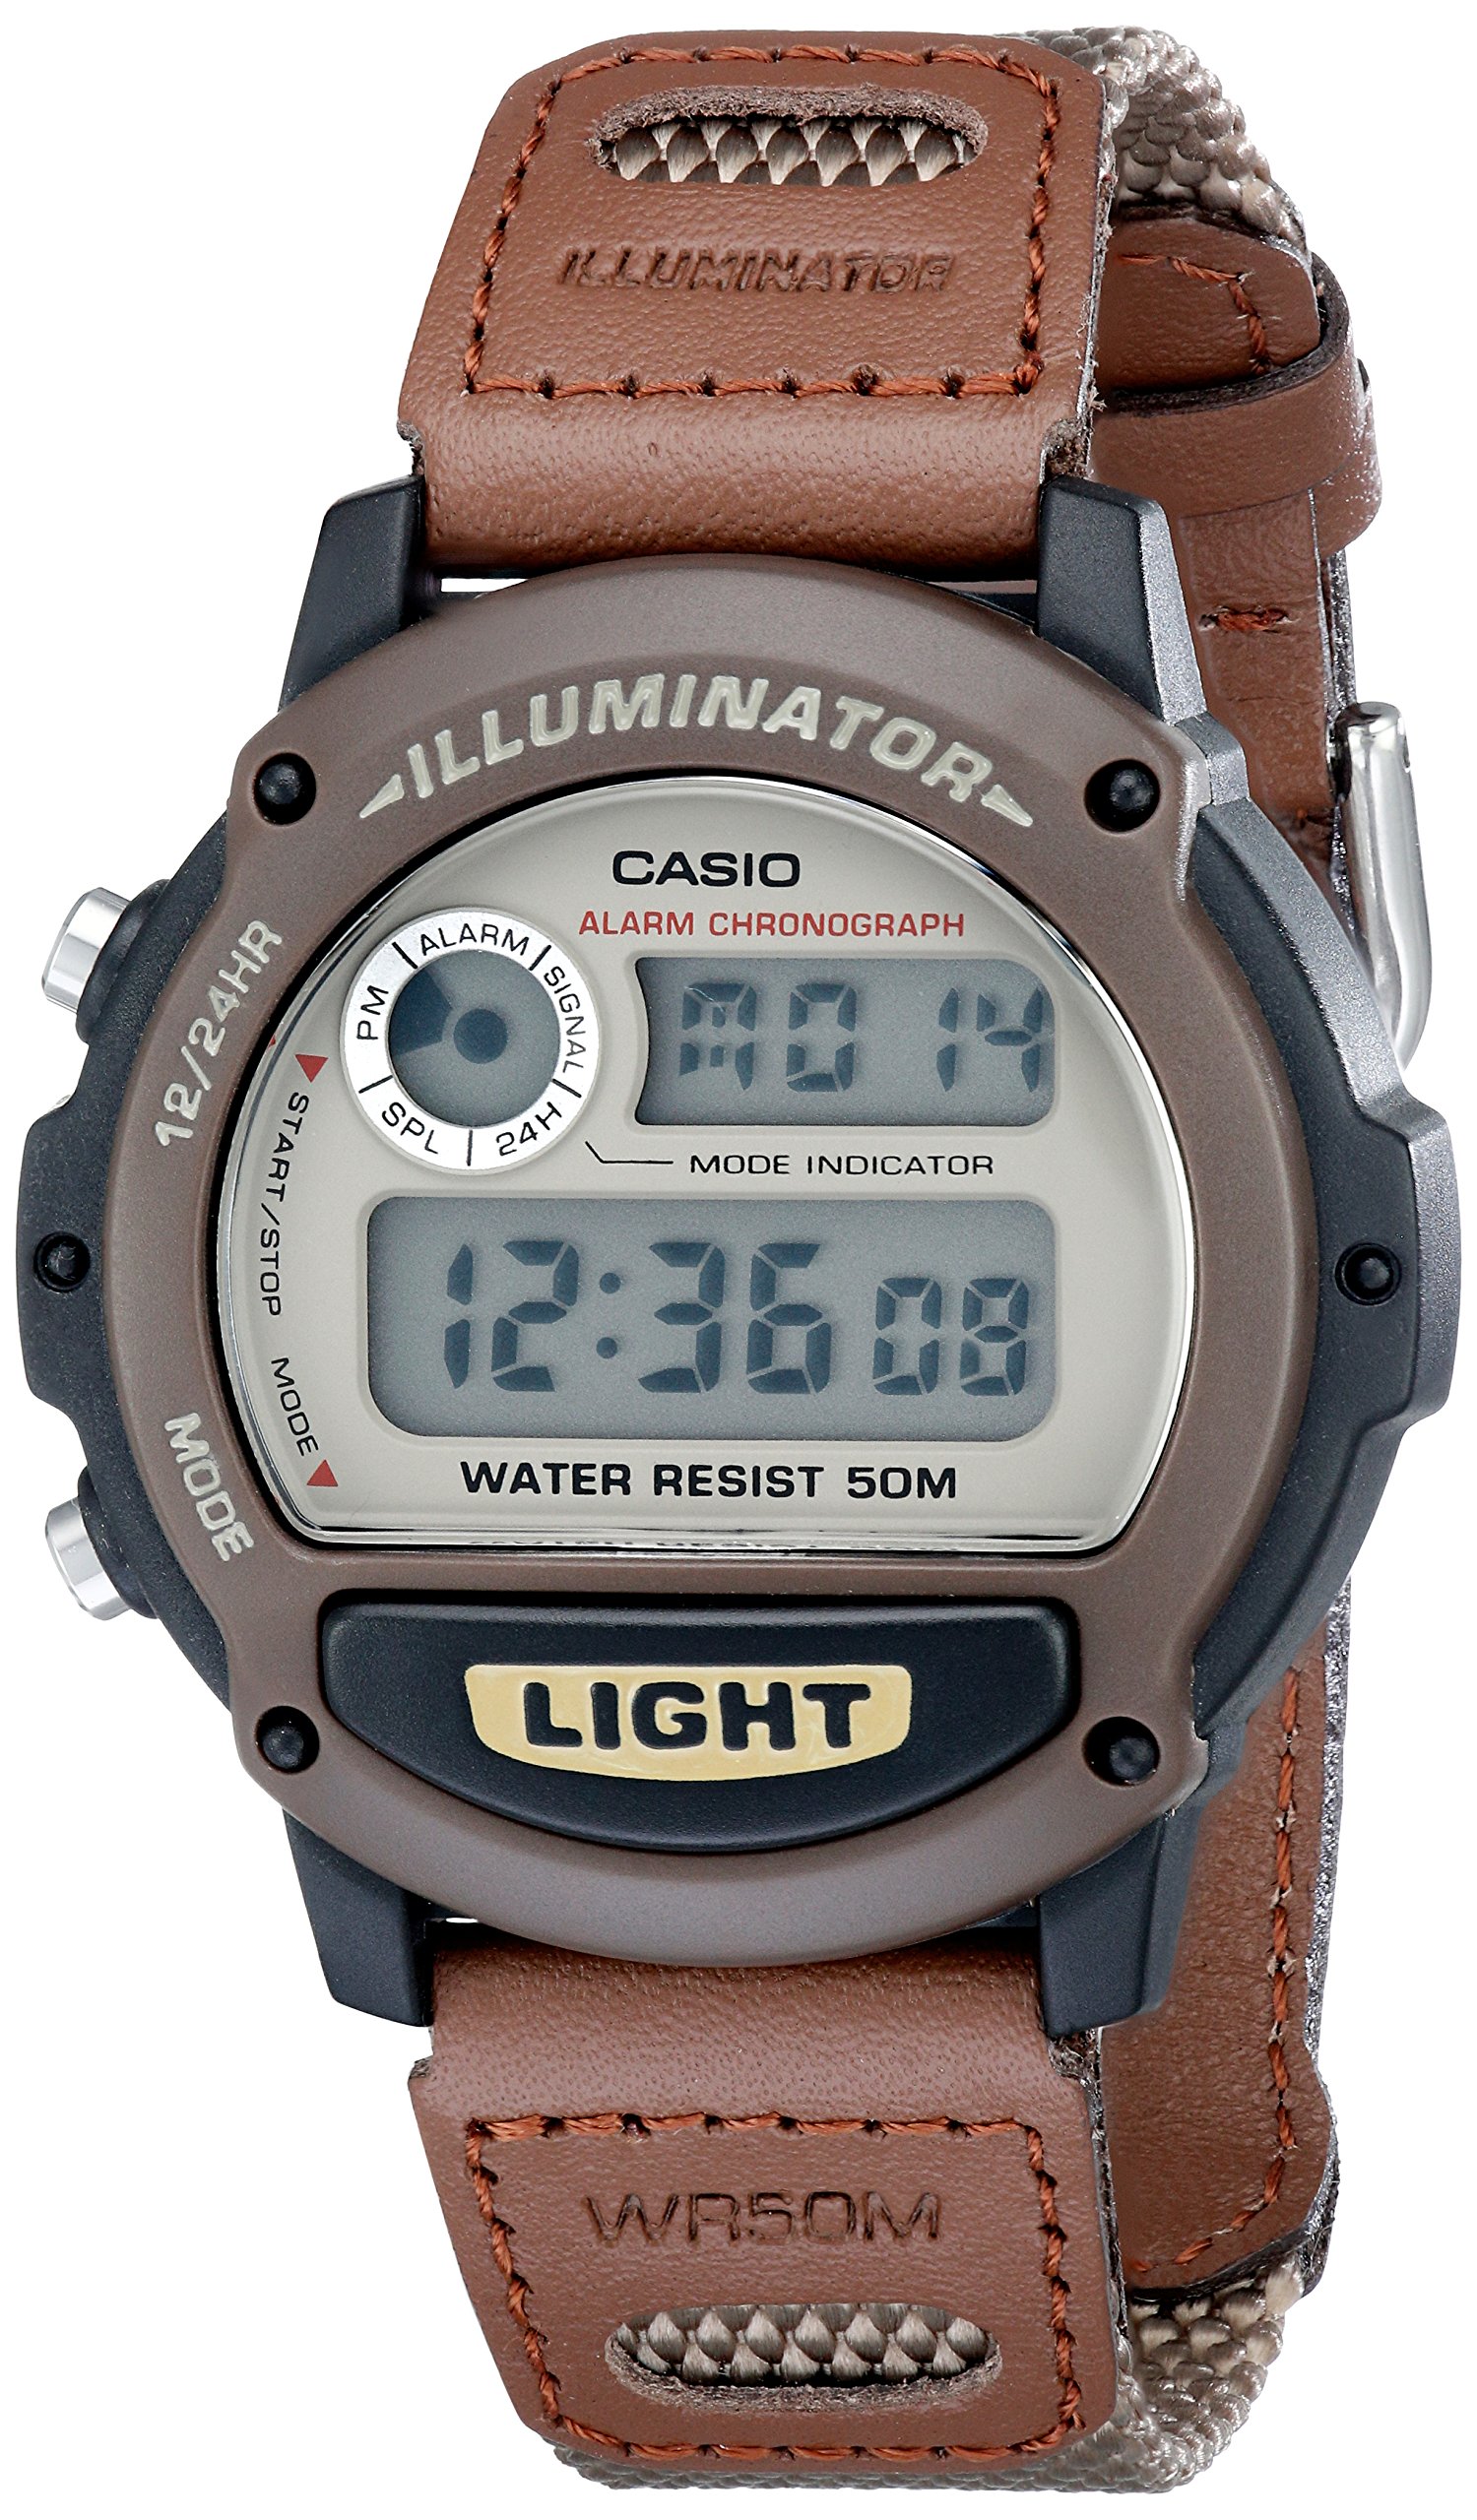 Casio Men's W89HB-5AV Illuminator Sport Watch - $15.39 - Amazon